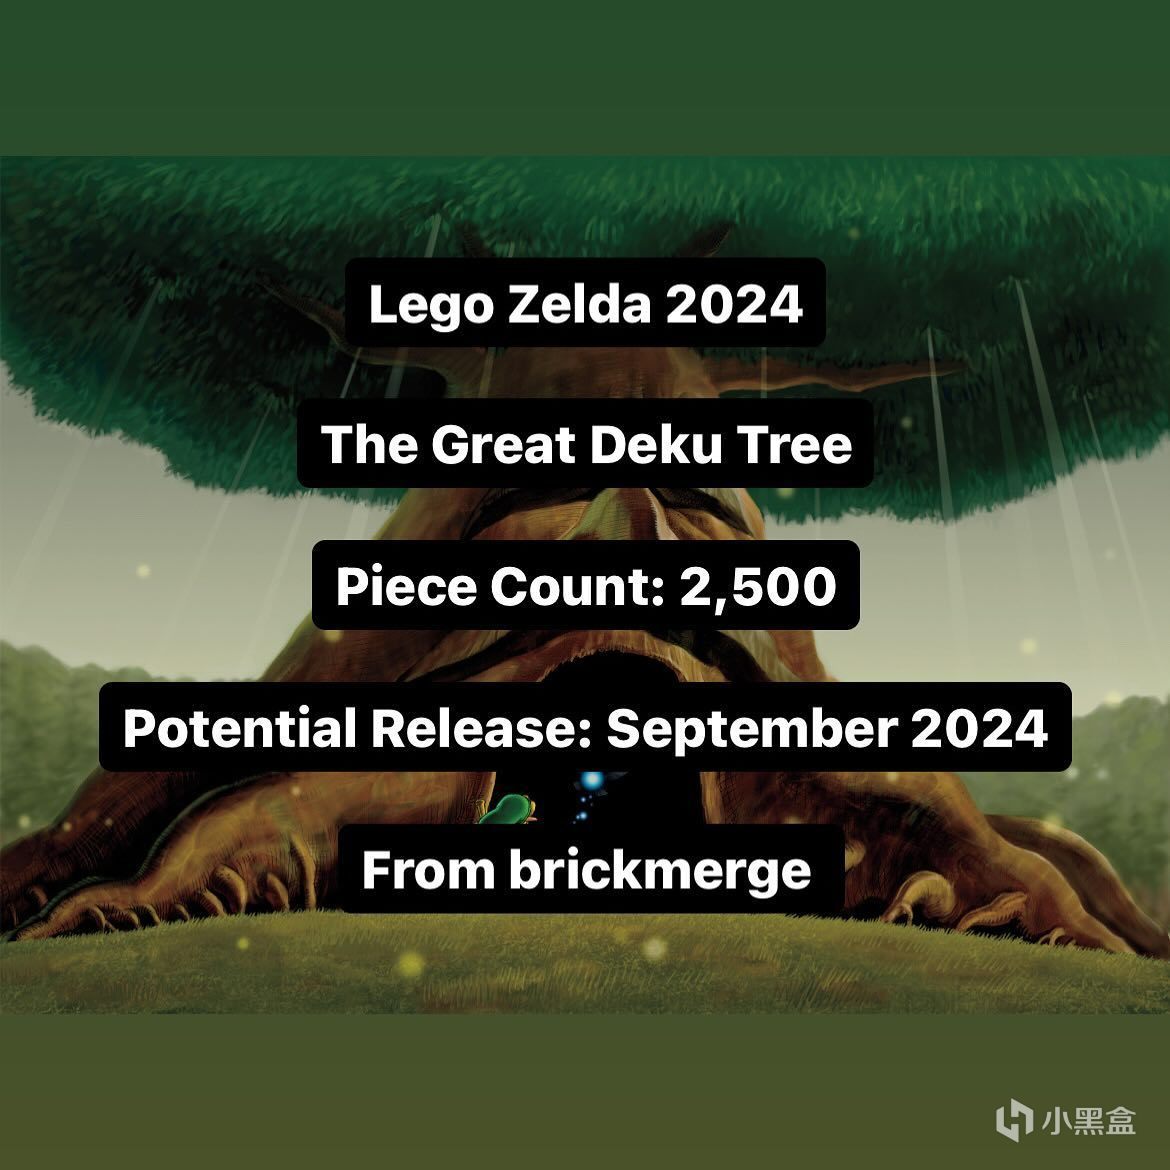 【主機遊戲】消息稱樂高《薩爾達傳說》德庫樹套裝 9 月發售，包含 2500 零件